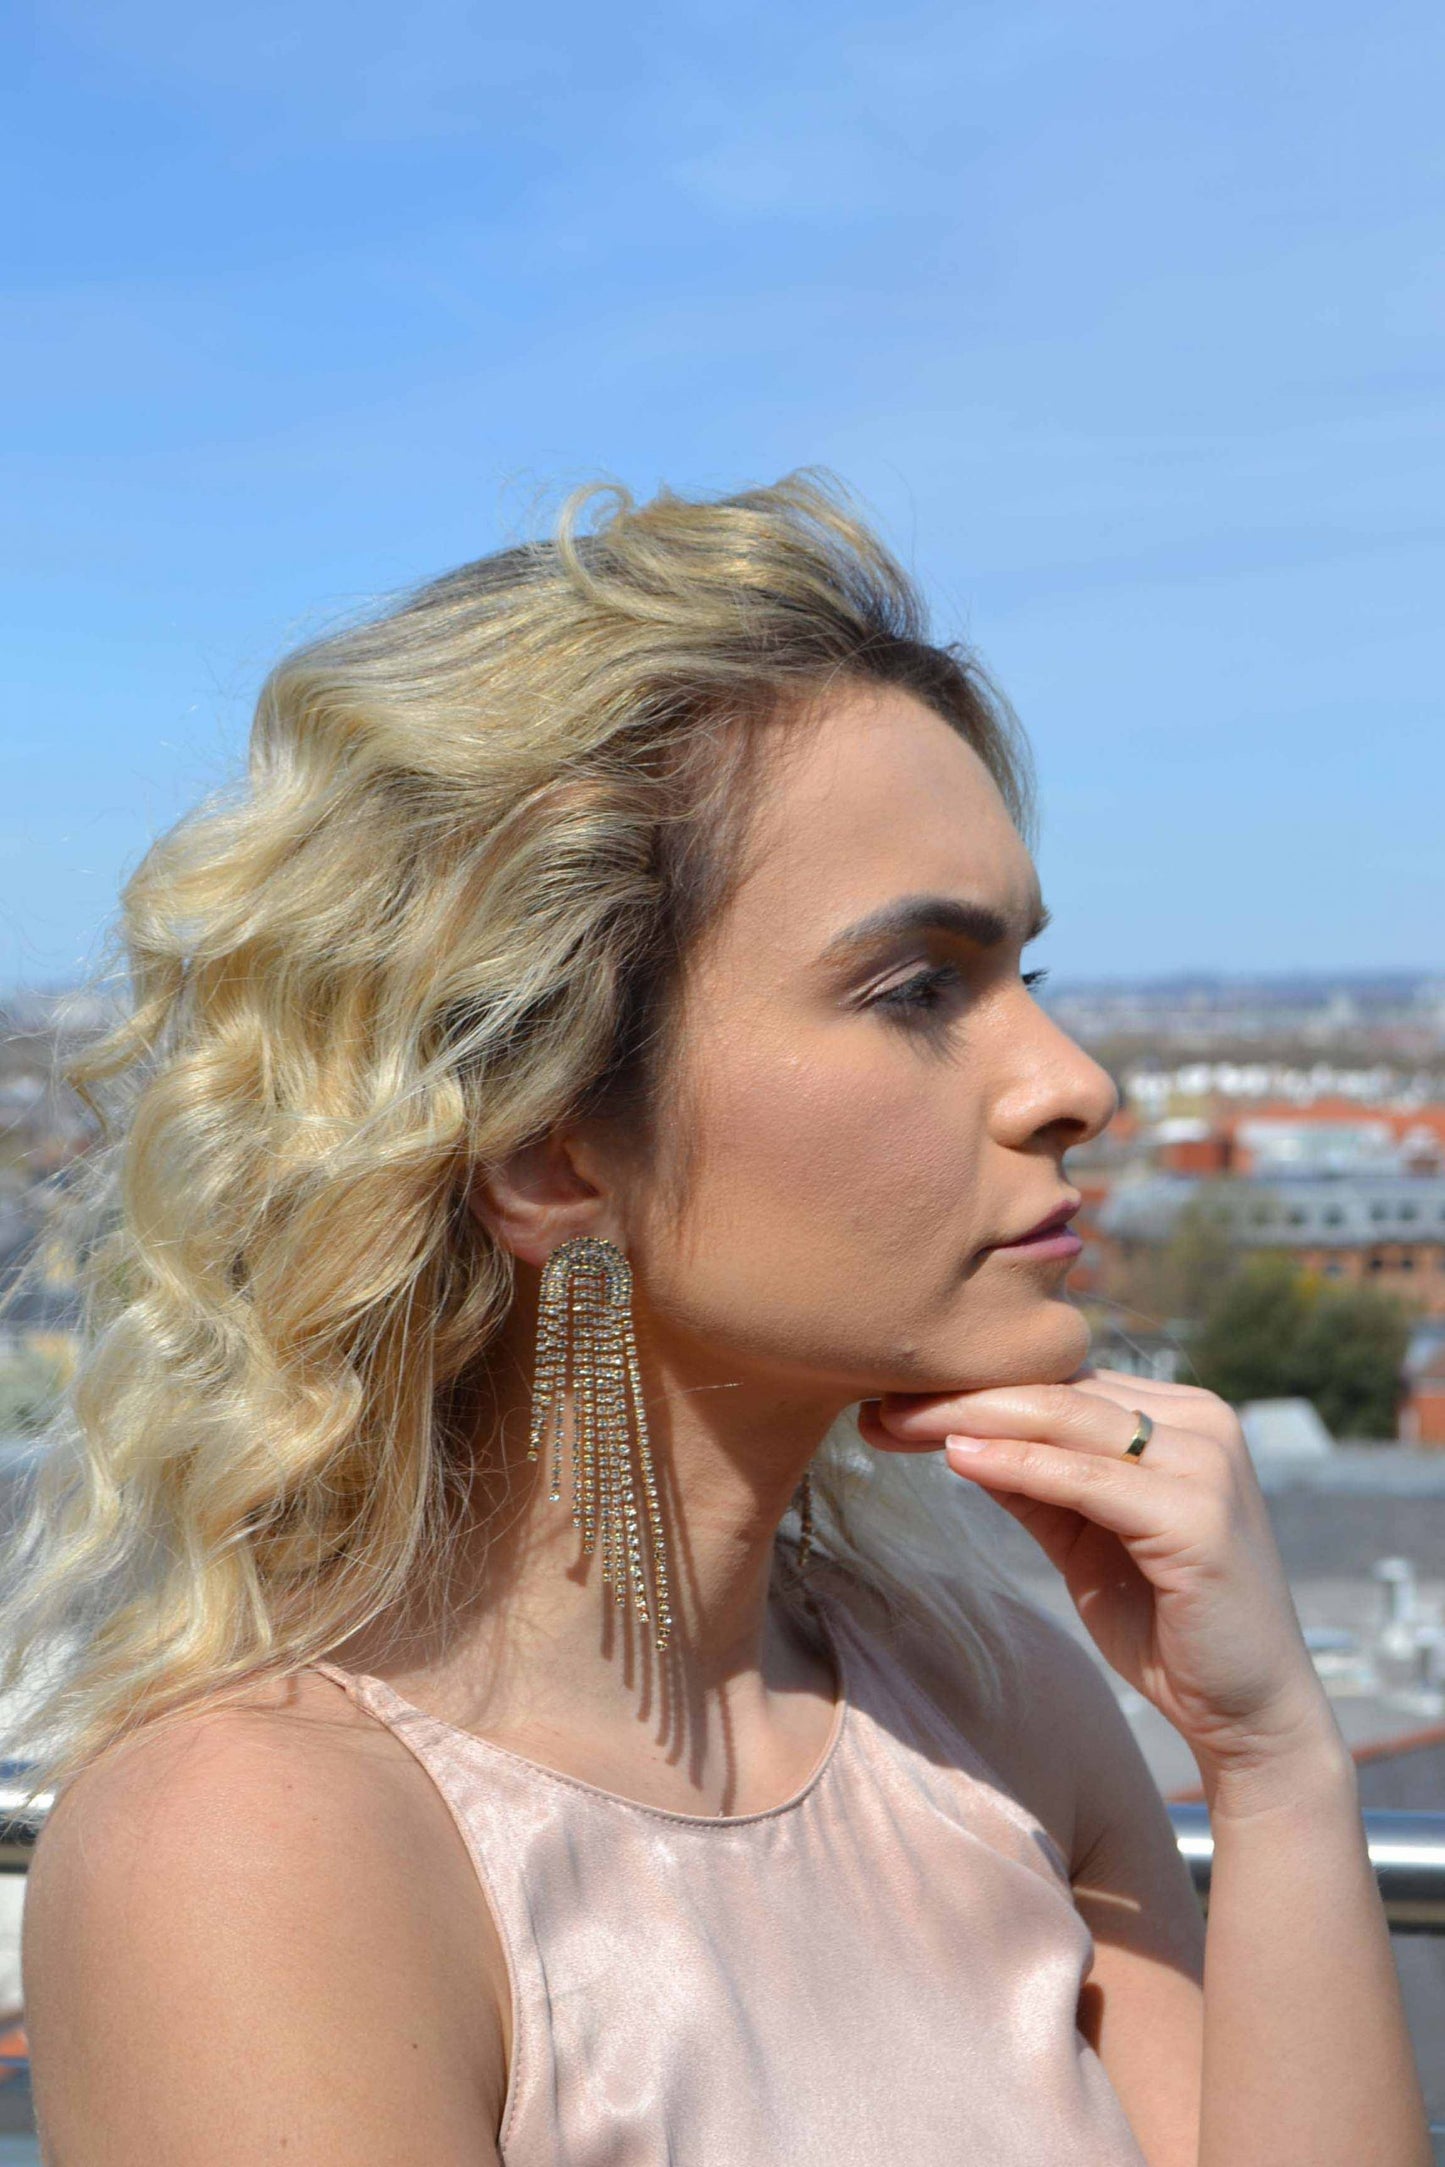 Aviva earring on model